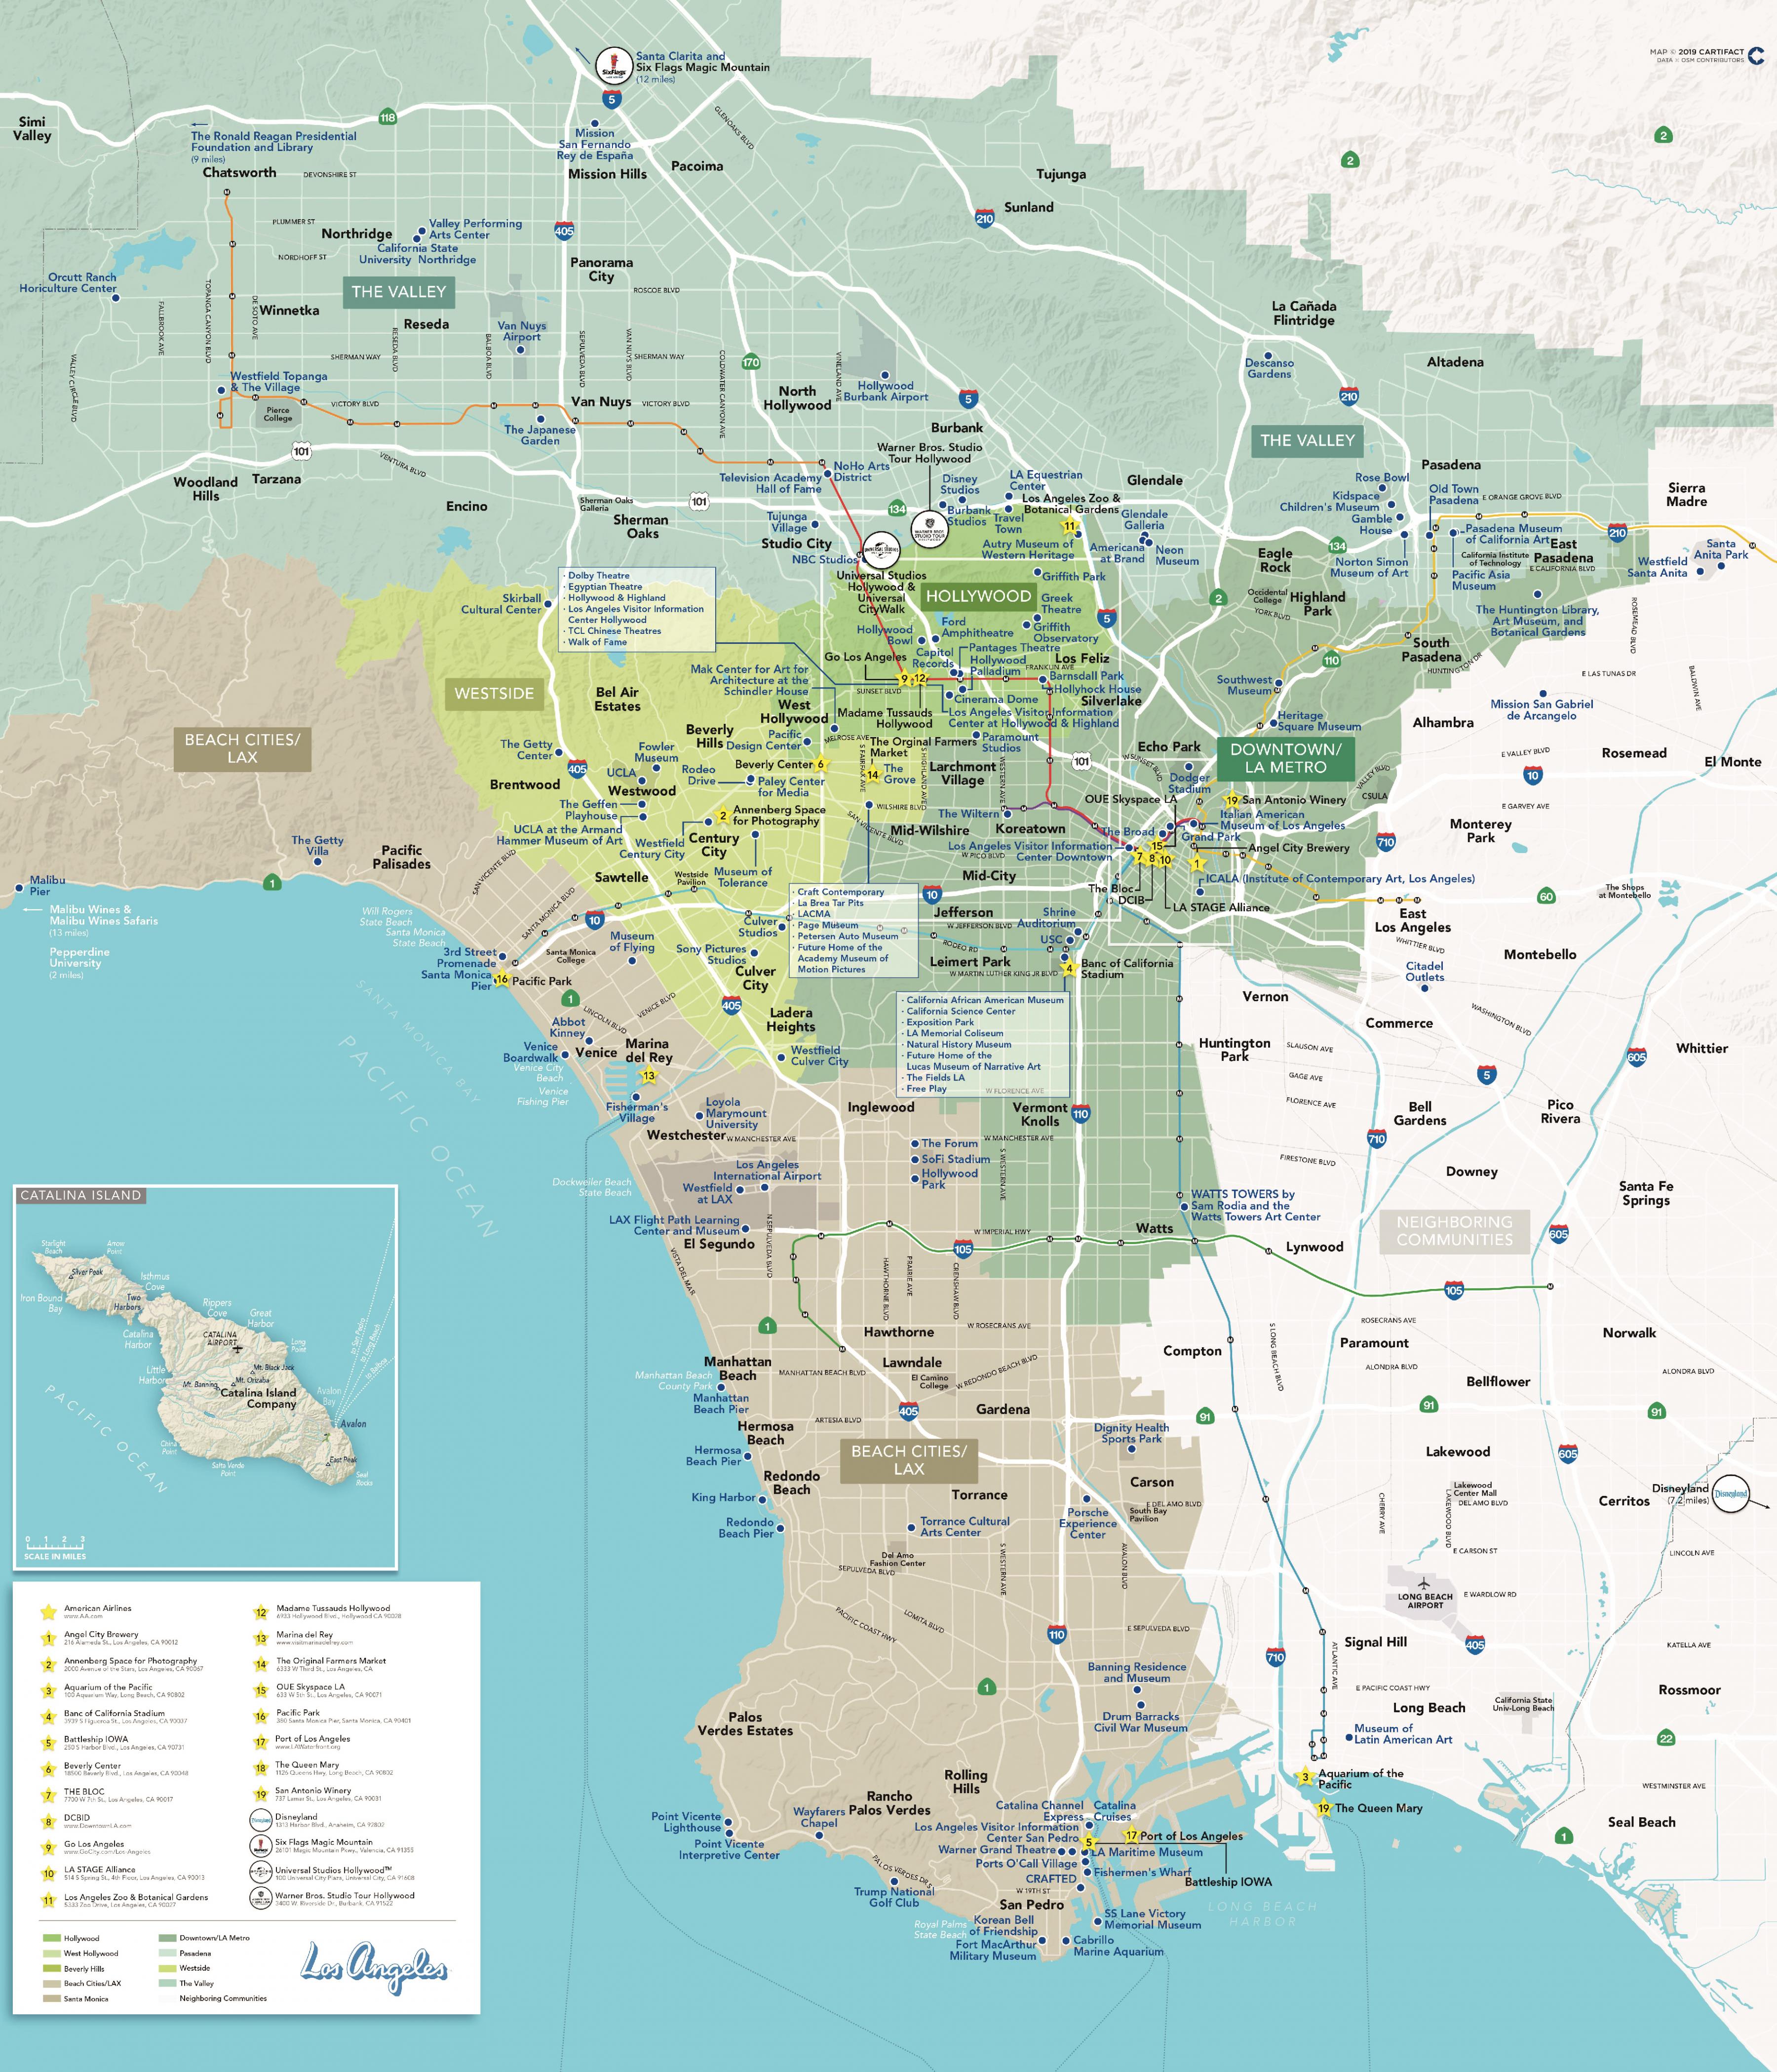 Parecer Familiarizarse Arrastrarse Los Ángeles mapa de la ciudad - LA ciudad de mapa (California - USA)